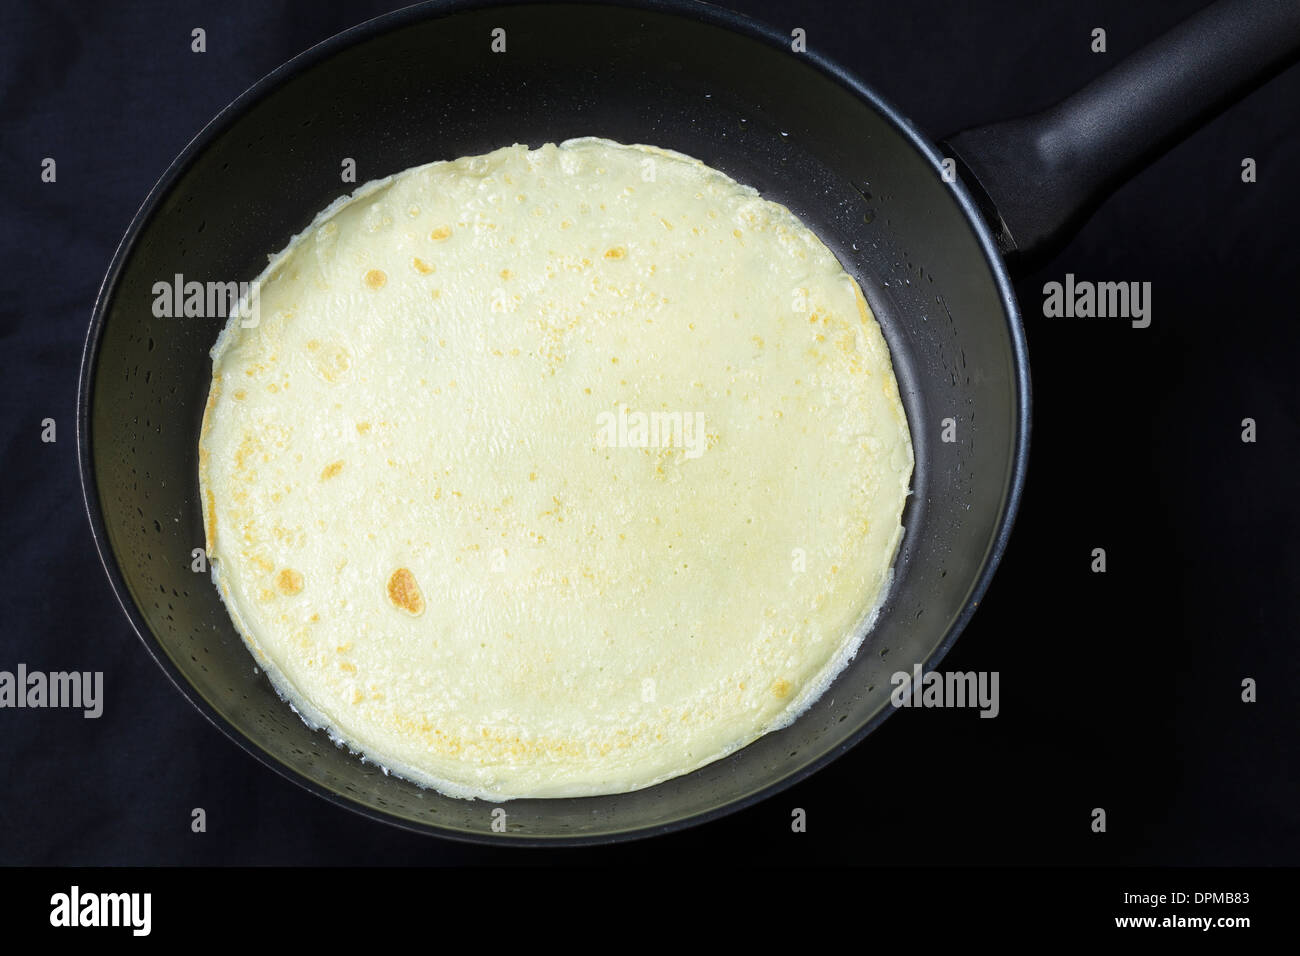 Pancake in frying pan Stock Photo